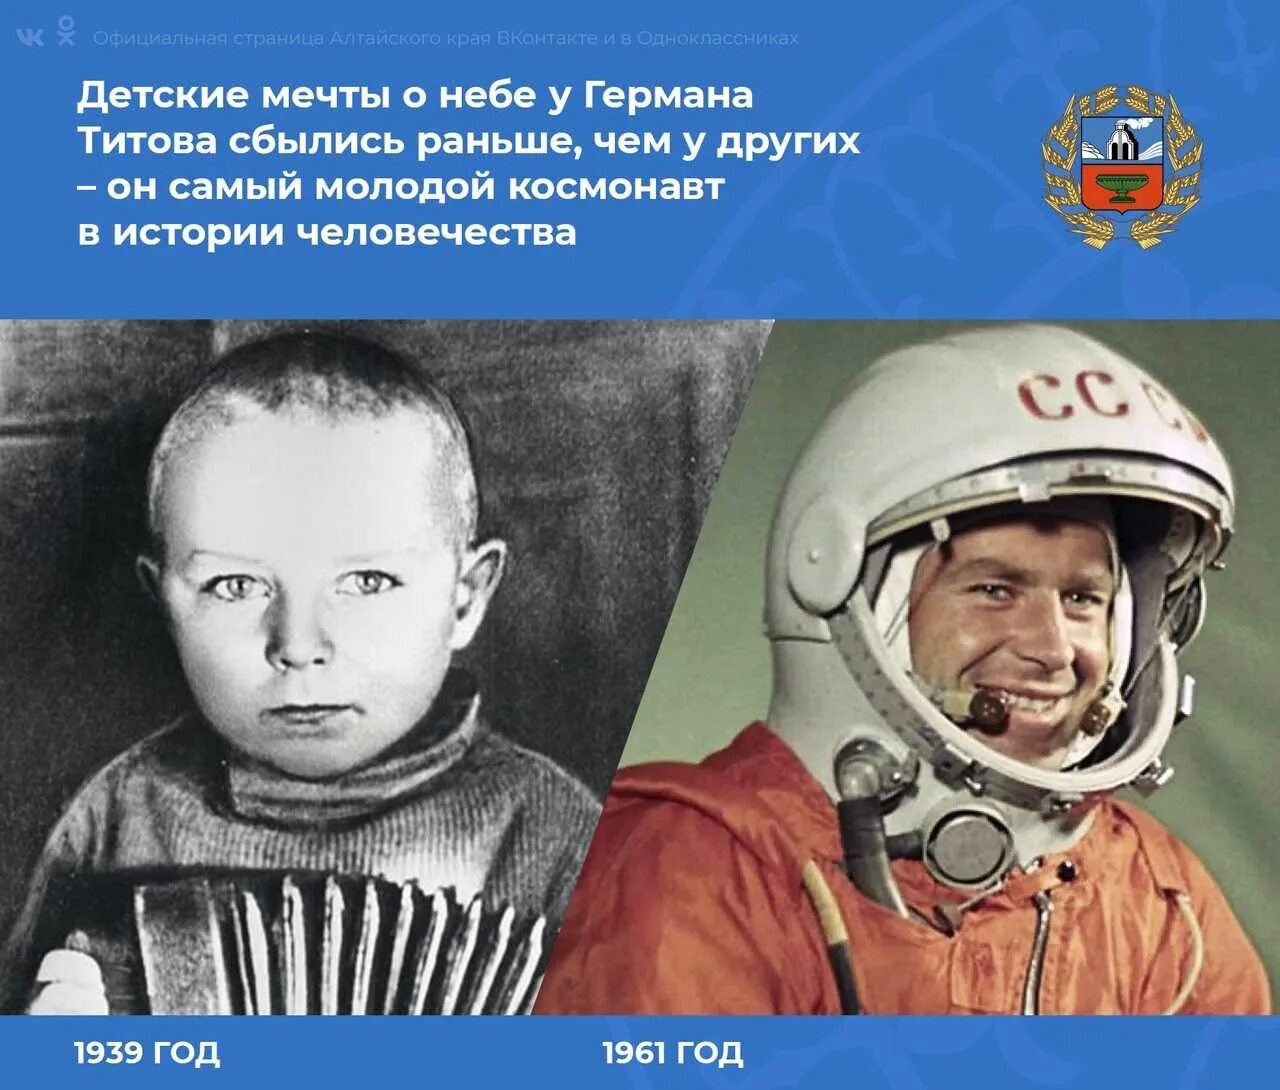 Второй человек после гагарина. Полет в космос Германа Титова 1961 г.